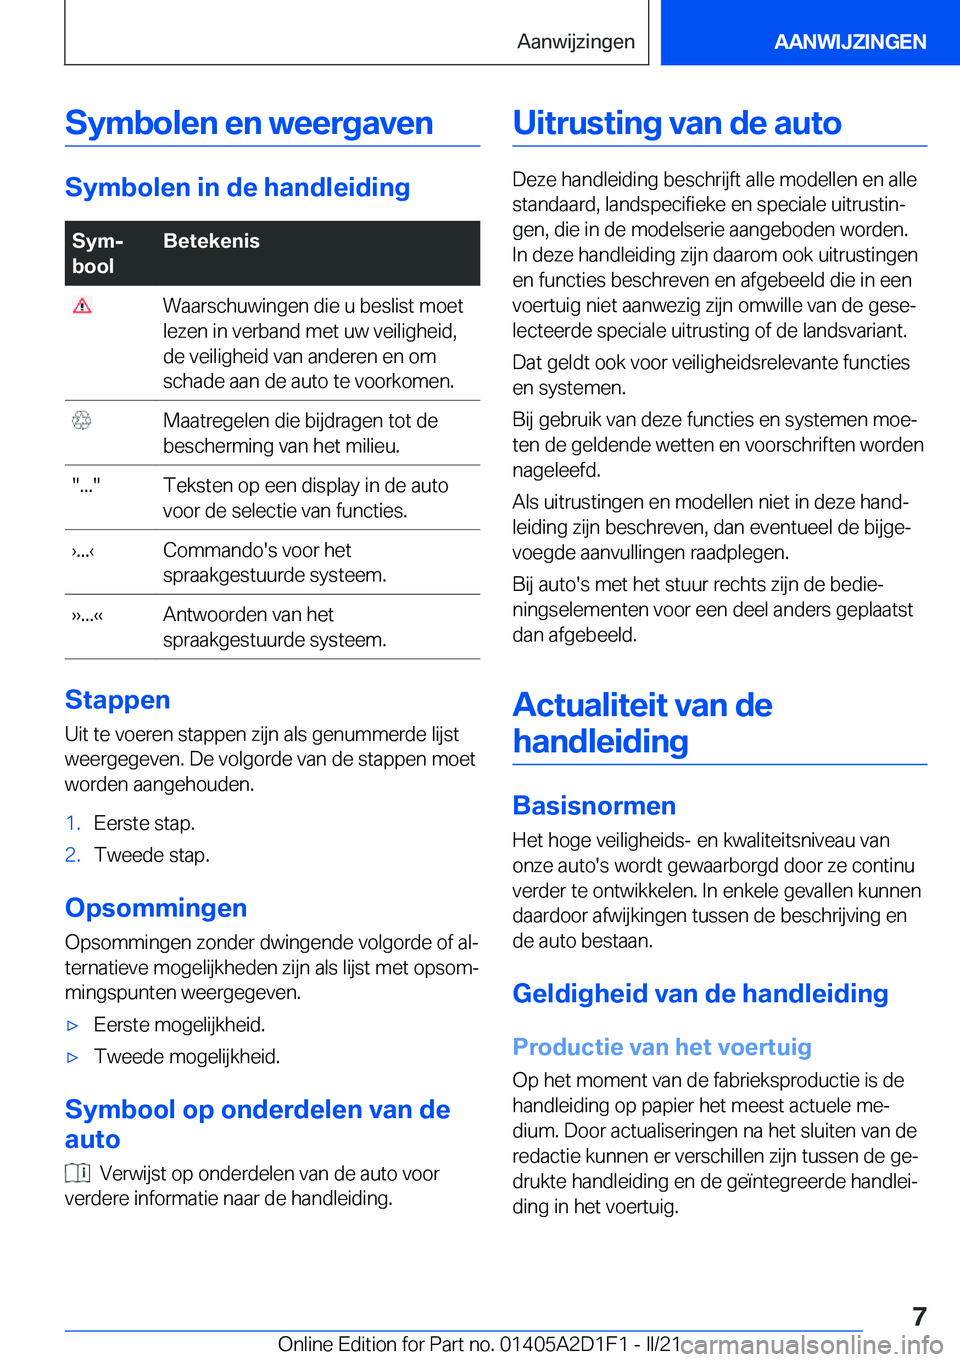 BMW X6 M 2021  Instructieboekjes (in Dutch) �S�y�m�b�o�l�e�n��e�n��w�e�e�r�g�a�v�e�n
�S�y�m�b�o�l�e�n��i�n��d�e��h�a�n�d�l�e�i�d�i�n�g
�S�y�mj
�b�o�o�l�B�e�t�e�k�e�n�i�s��W�a�a�r�s�c�h�u�w�i�n�g�e�n��d�i�e��u��b�e�s�l�i�s�t��m�o�e�t
